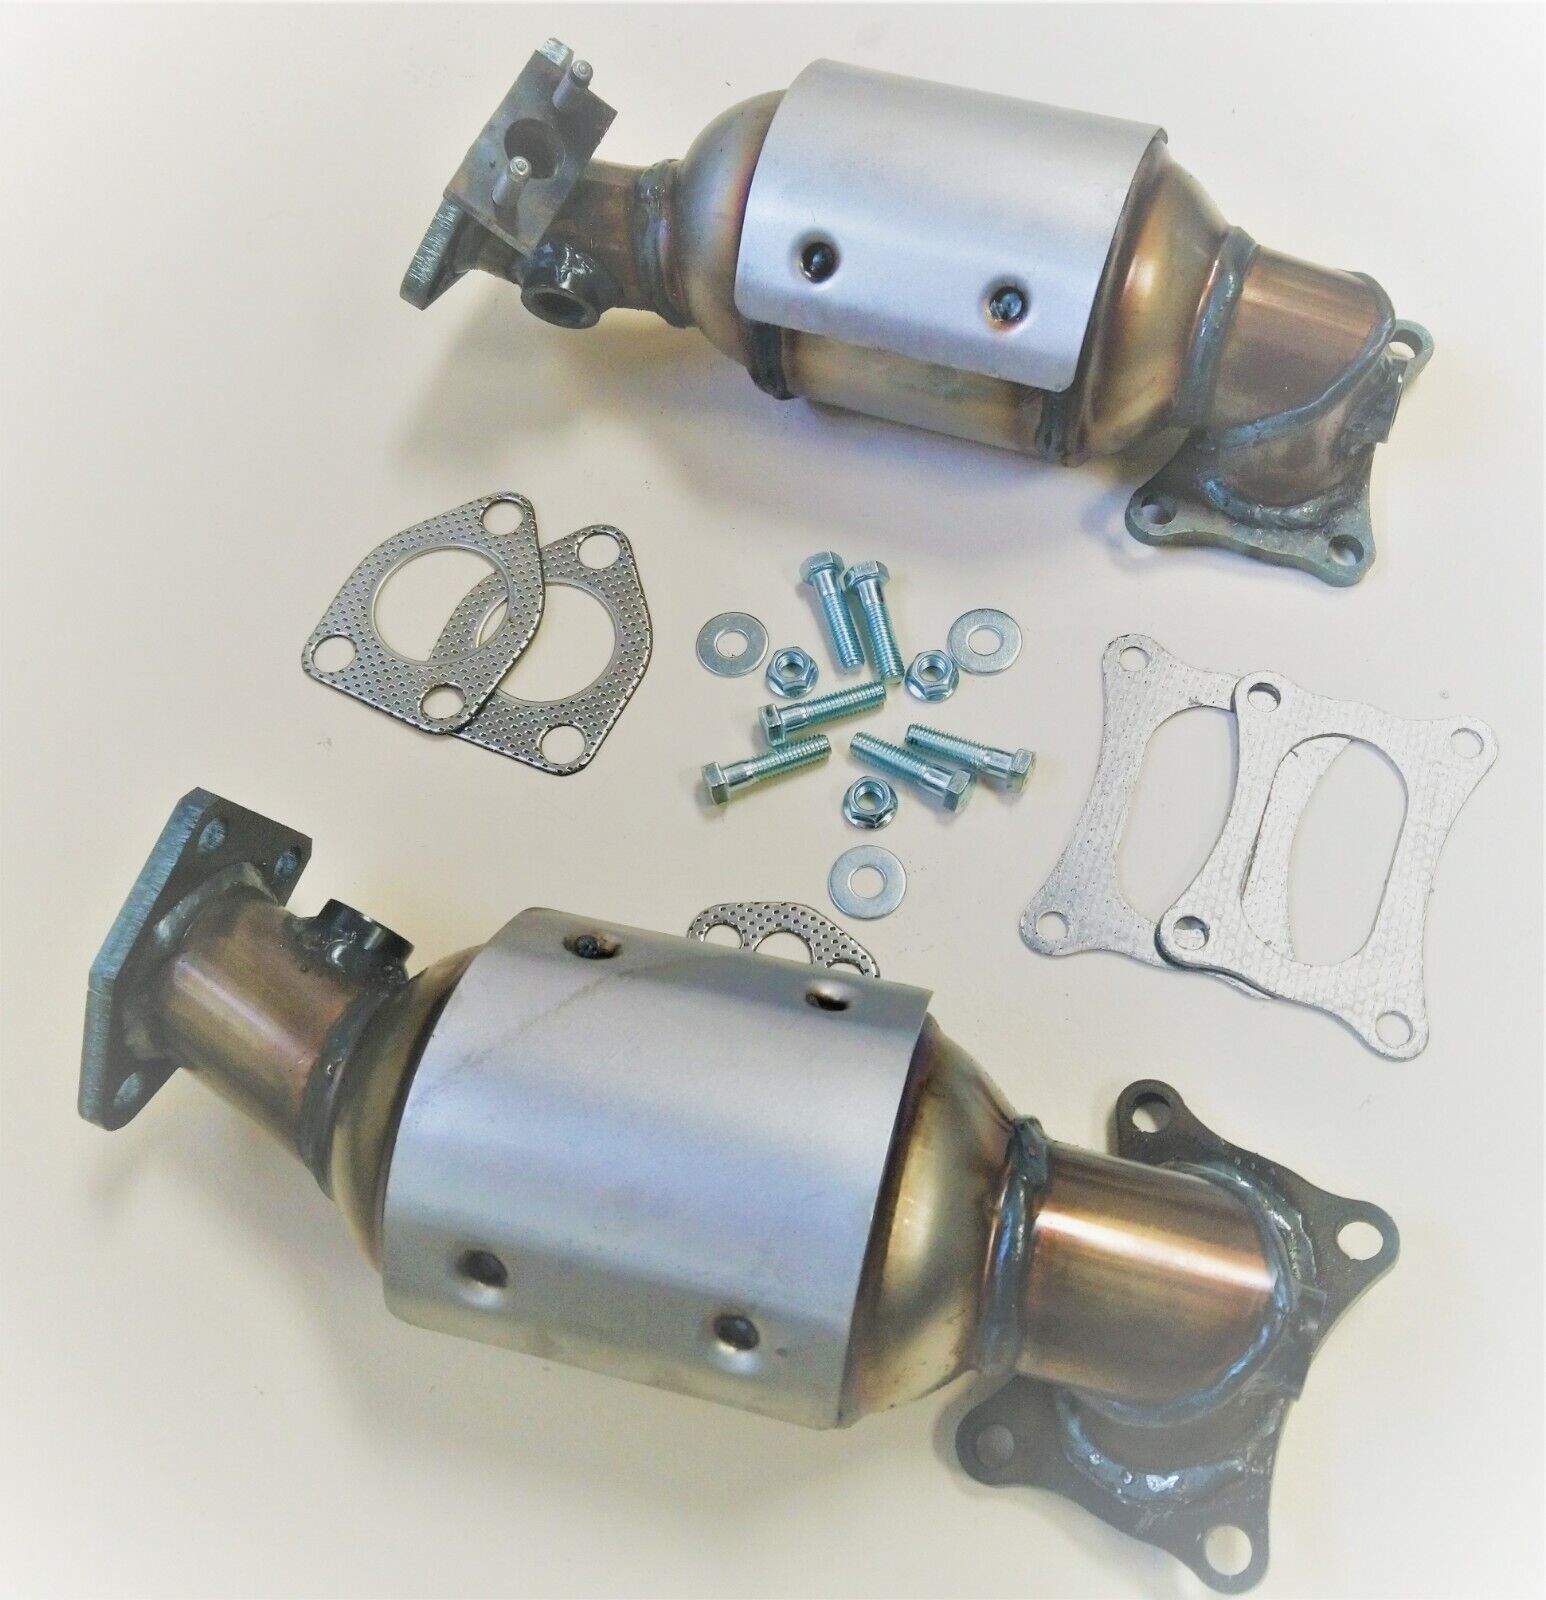 2008-2012 Honda Accord 3.5L Catalytic Converters (BANK 1 AND BANK 2)